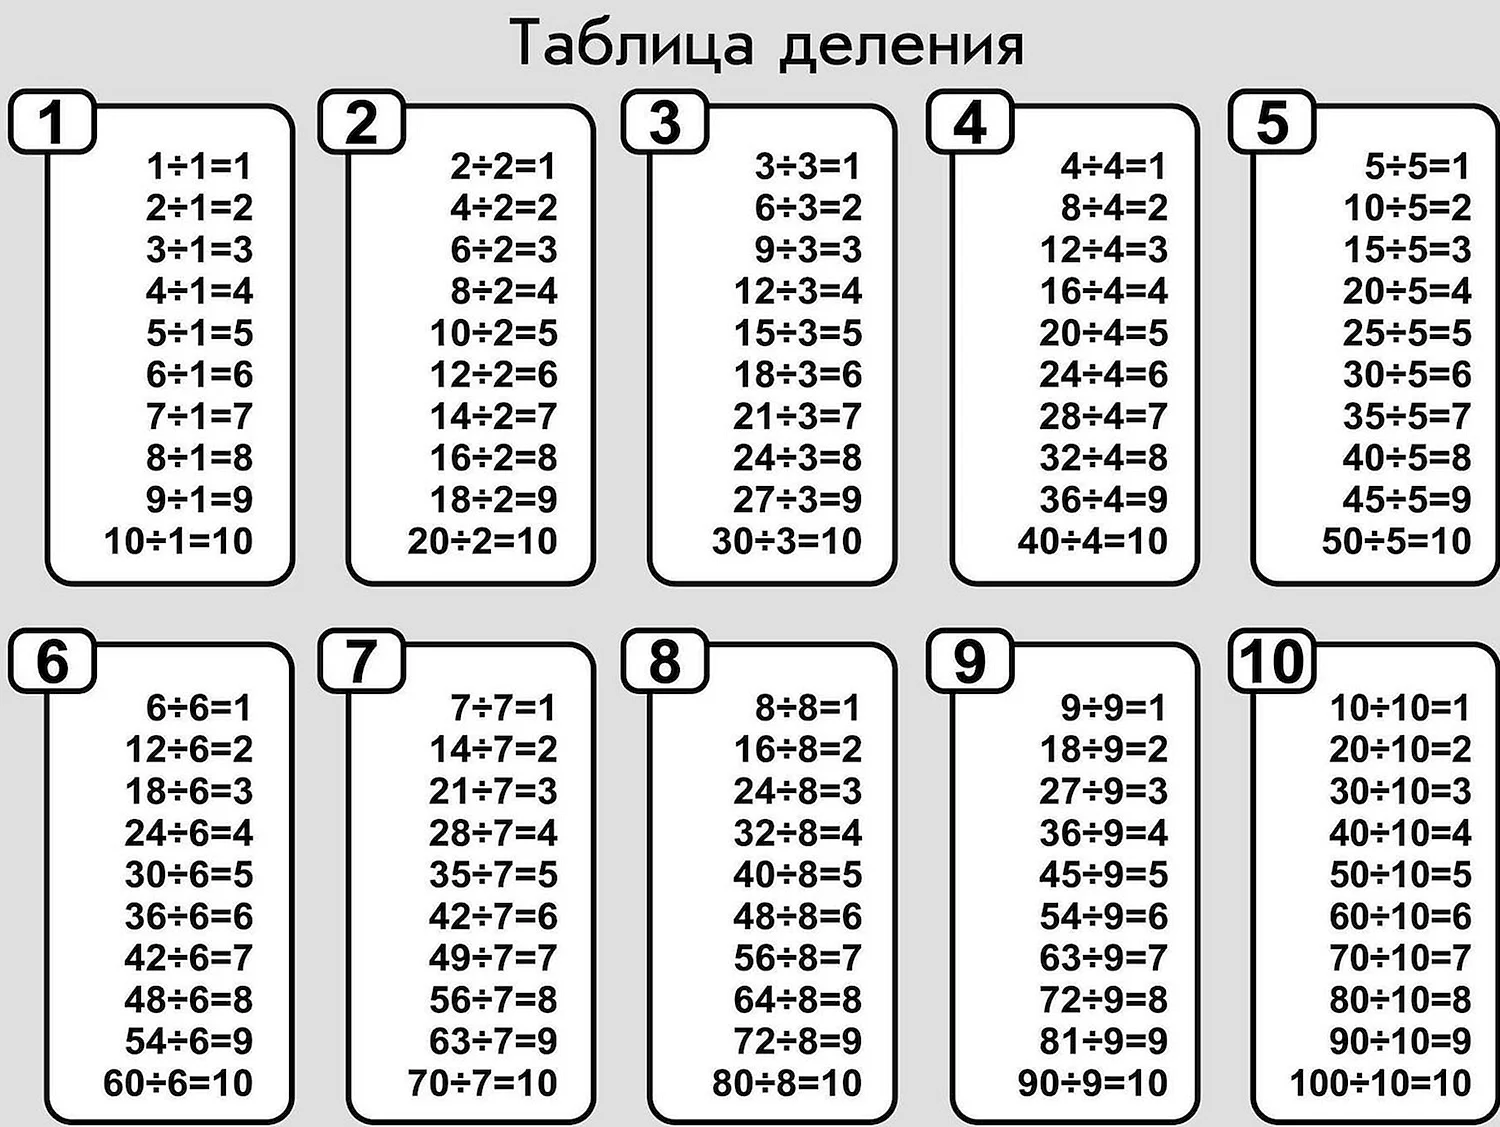 Таблица деления от 1 до 10